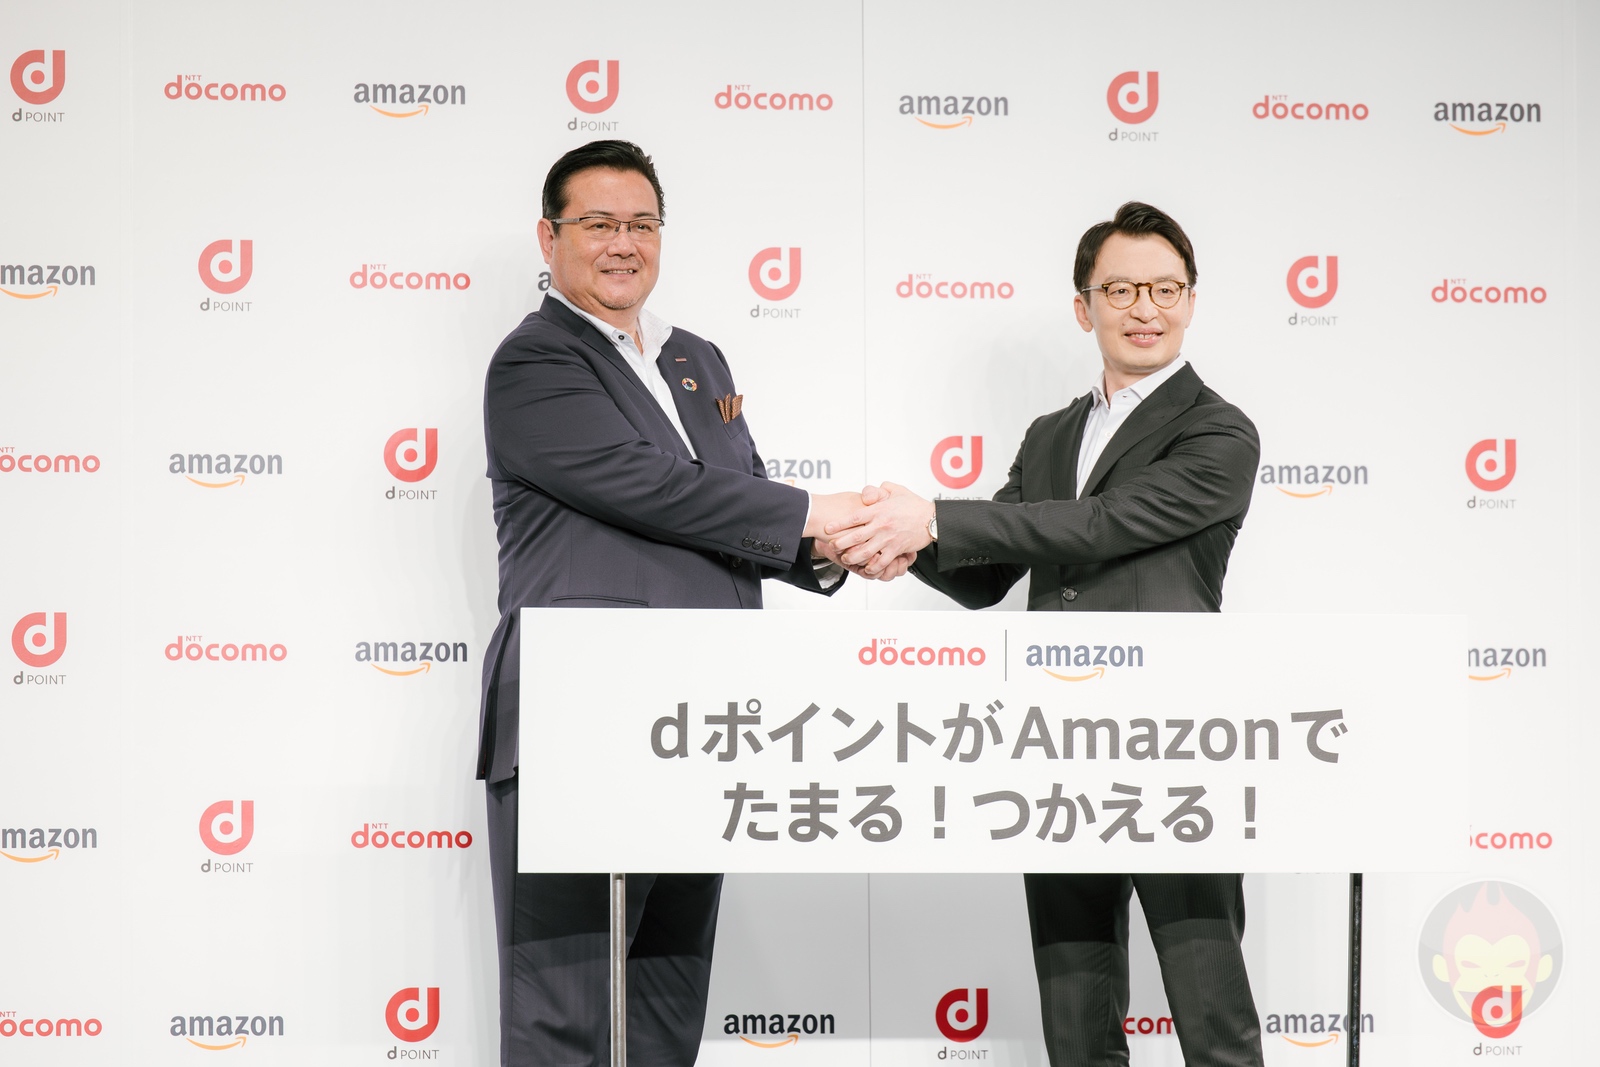 Amazon-Docomo-Collaboration-CEOS-01.jpg